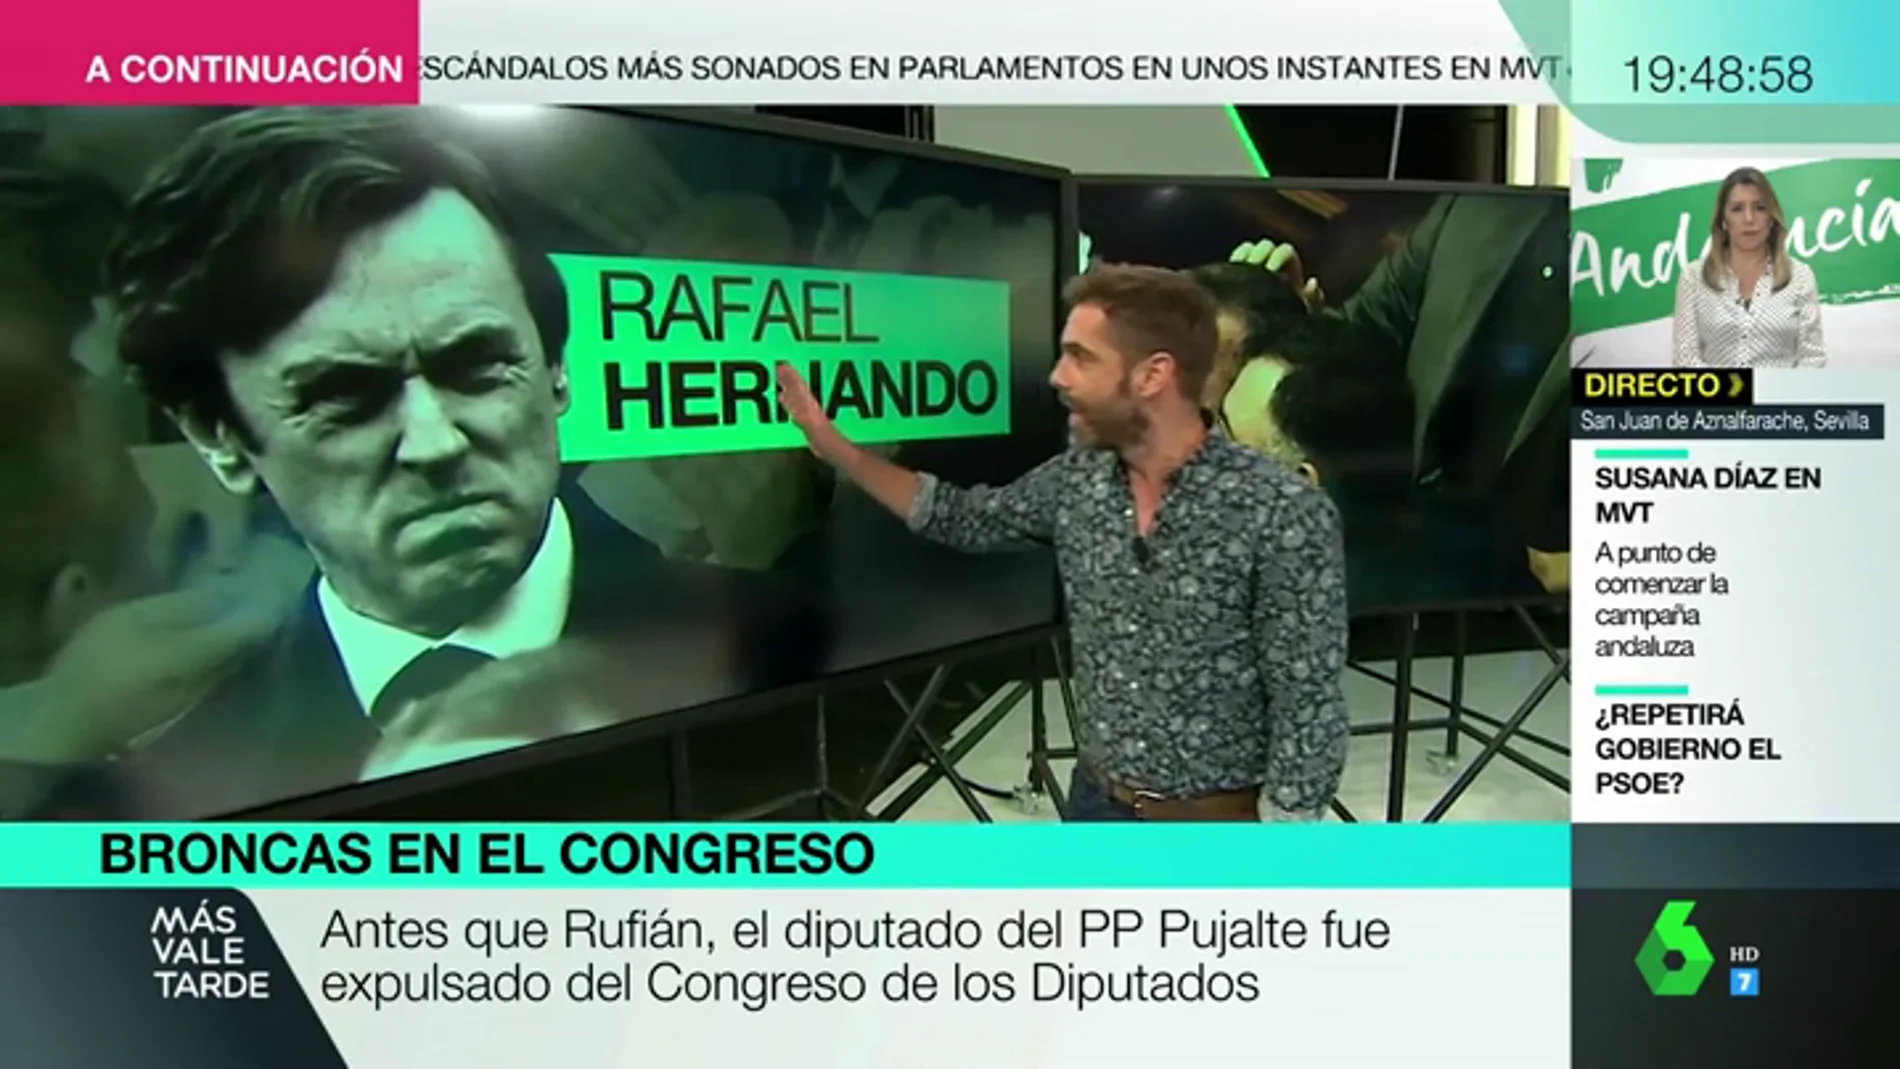 Martínez Pujalte, Labordeta, Rafael Hernando... repasamos los rifirrafes más sonados de la historia reciente del Congreso